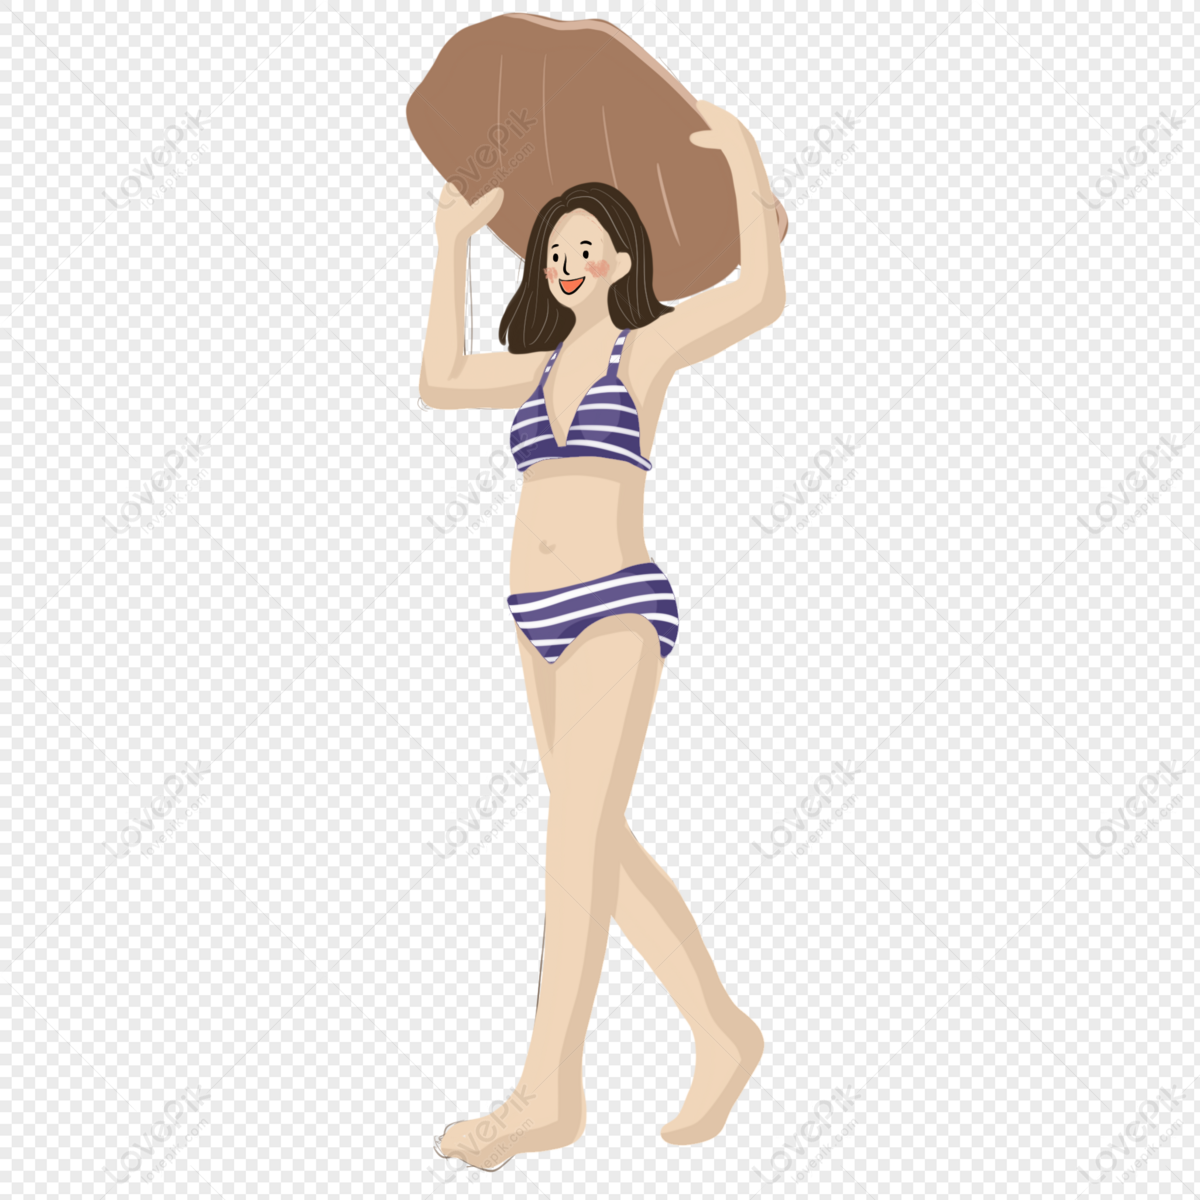 Hình ảnh Người đẹp Hoạt Hình Bikini PNG Miễn Phí Tải Về - Lovepik